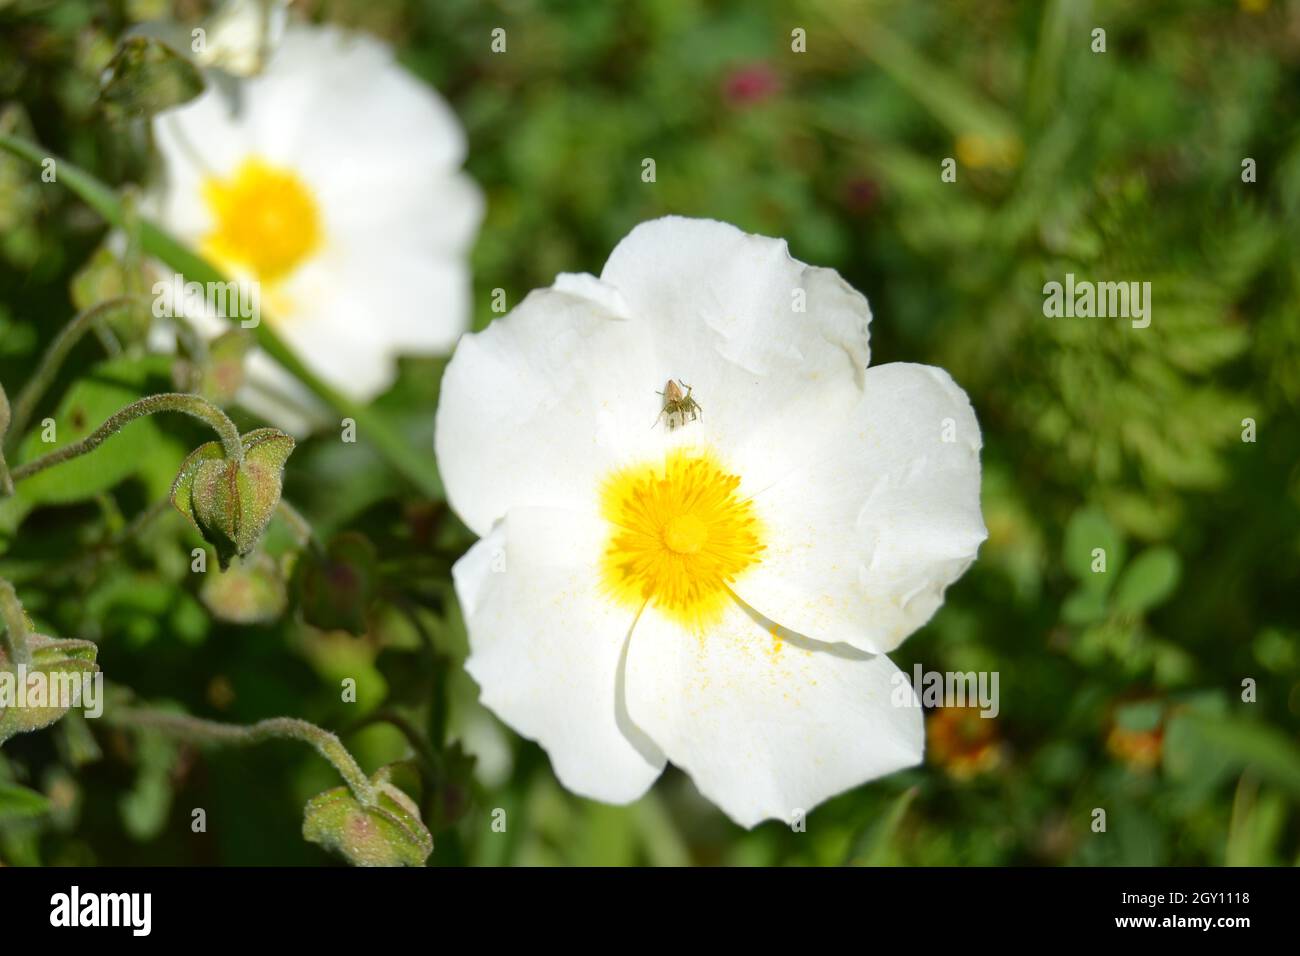 Cistus Monspeliensis Flower with Little Spider Stock Photo